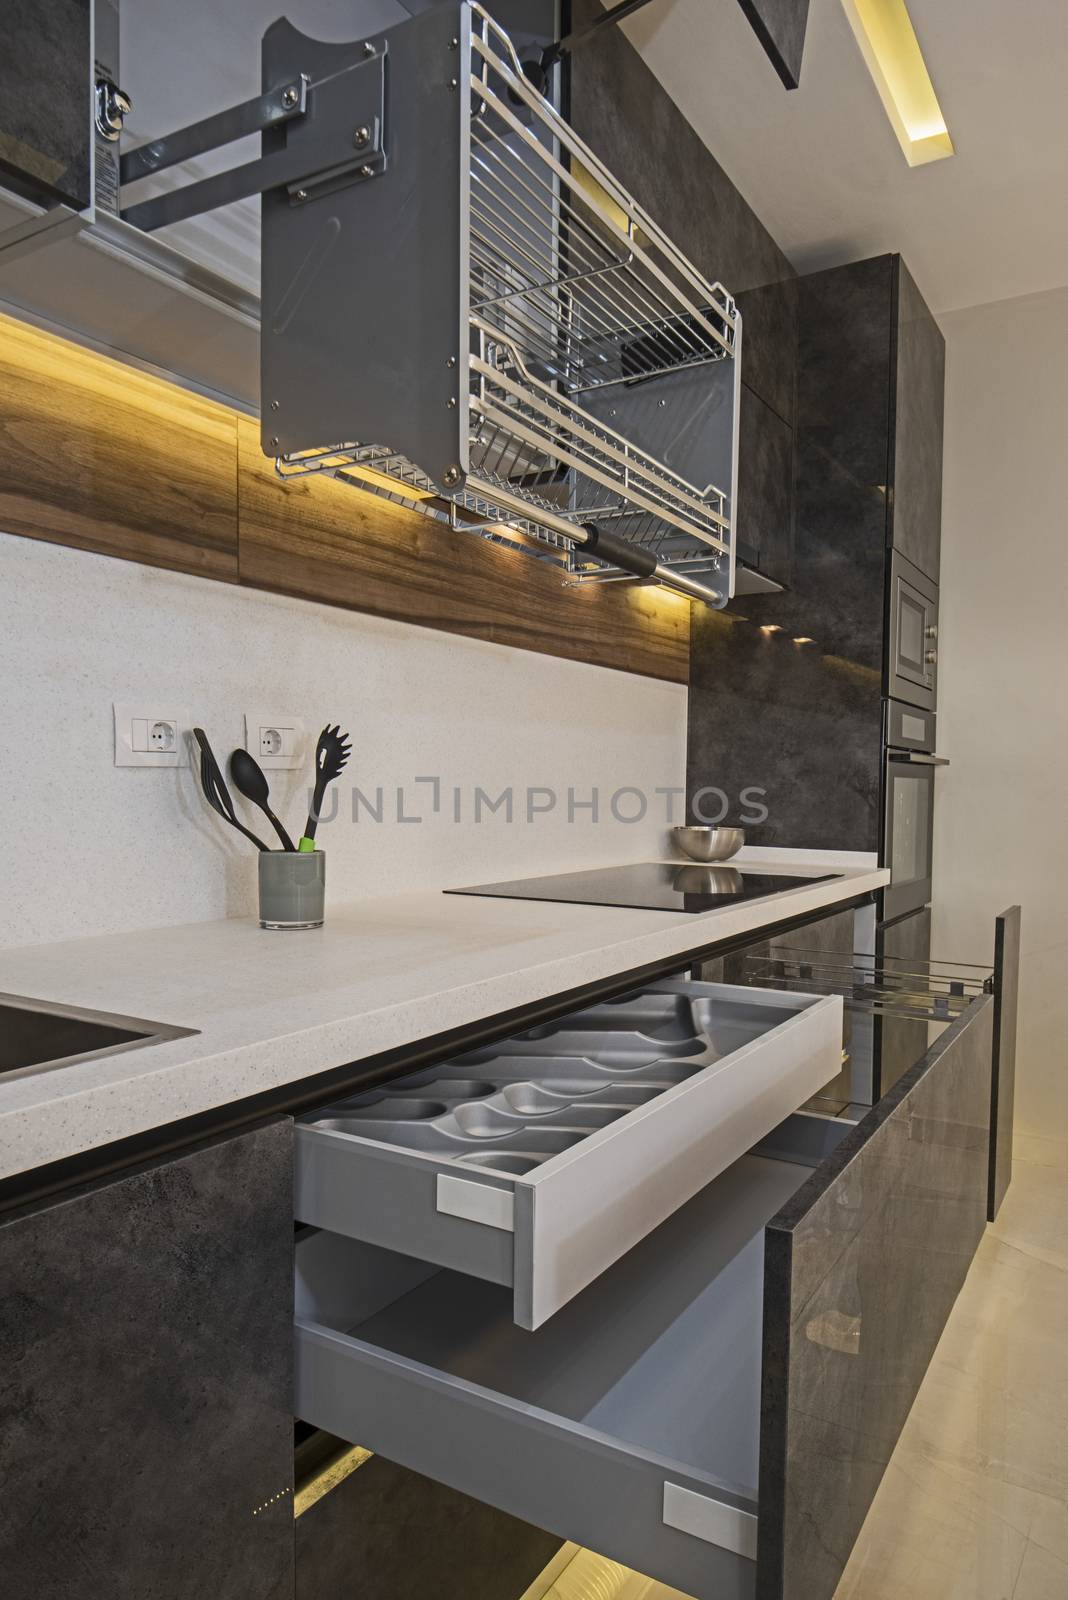 Modern kitchen design in a luxury apartment by paulvinten